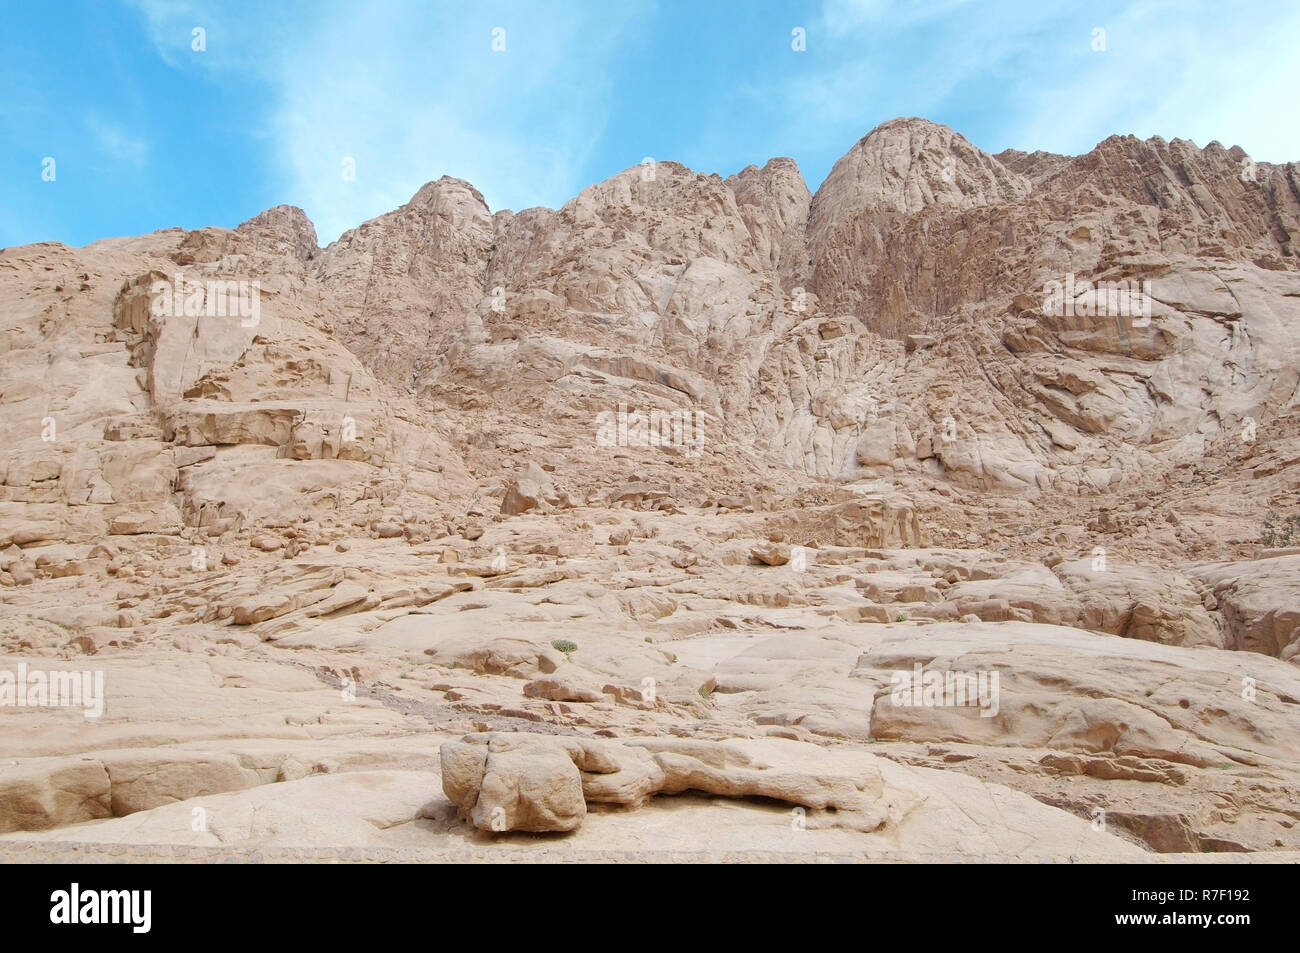 Sinai mountains, Sinai Peninsula, Egypt Stock Photo